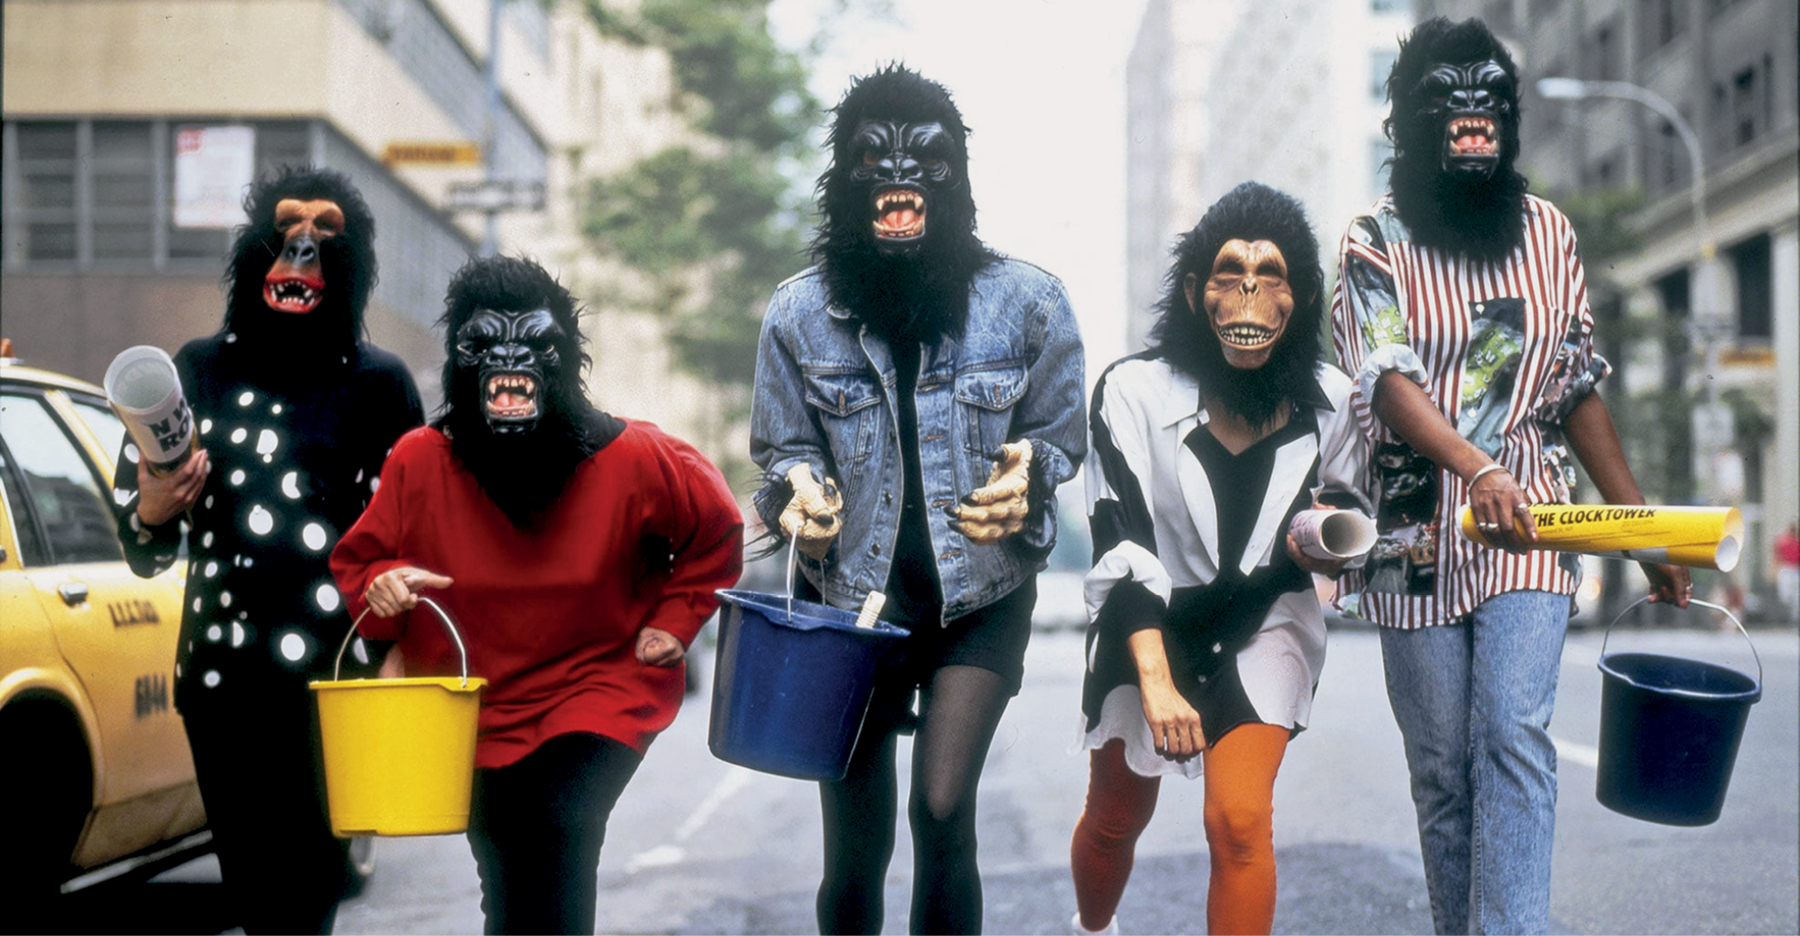 Fotografia. Cinco mulheres usando roupas coloridas e máscara de gorilas. Elas estão segurando baldes e rolos de papel, e andam no meio da rua. Ao redor, há prédios e um táxi.